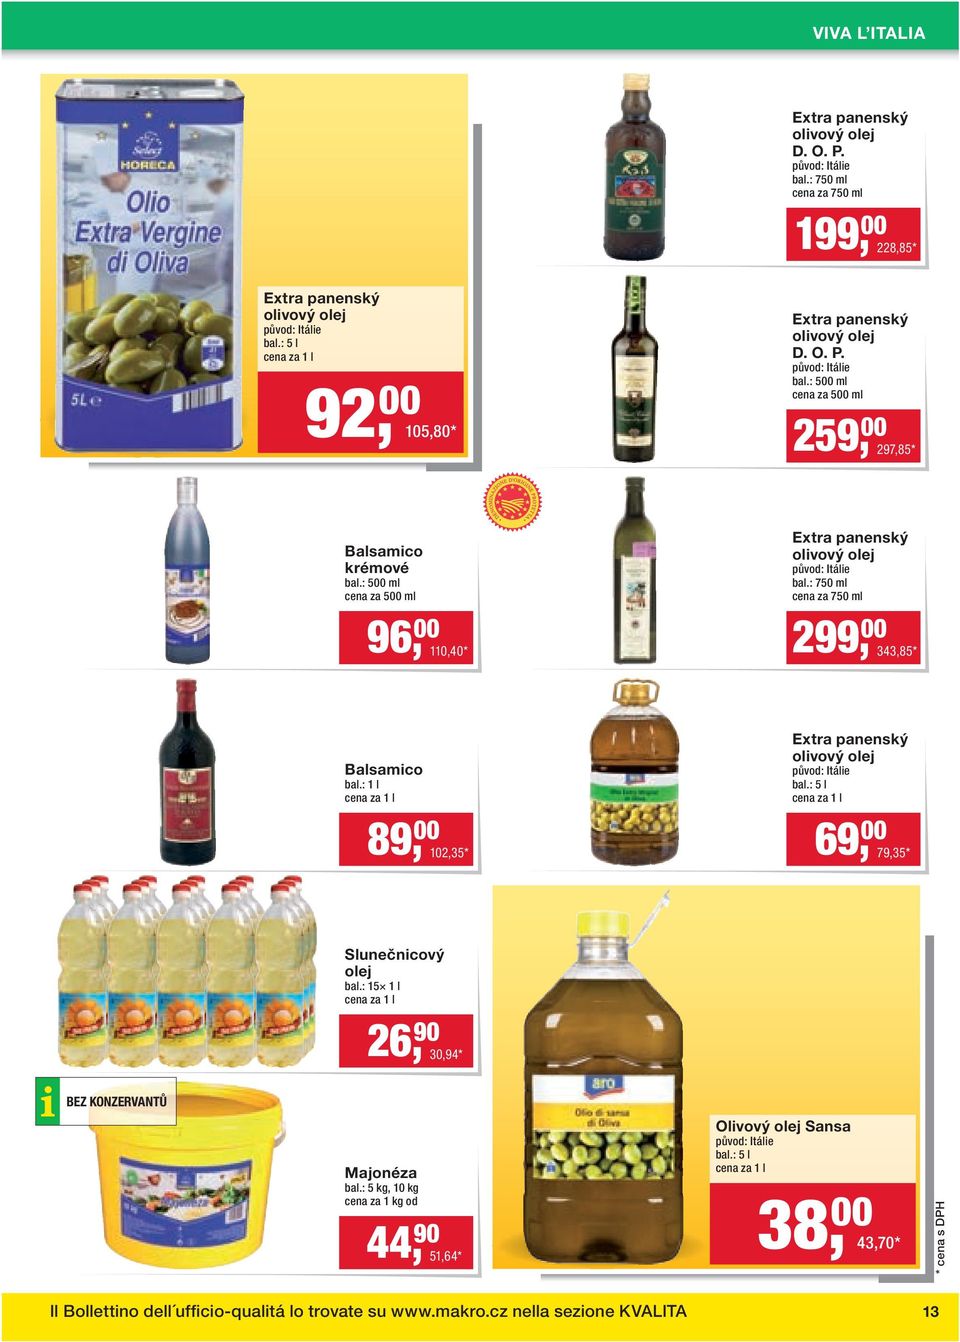 : 500 ml cena za 500 ml Extra panenský olivový olej původ: Itálie bal.: 750 ml cena za 750 ml 96, 00 110,40 * 299, 00 343,85 * Balsamico bal.